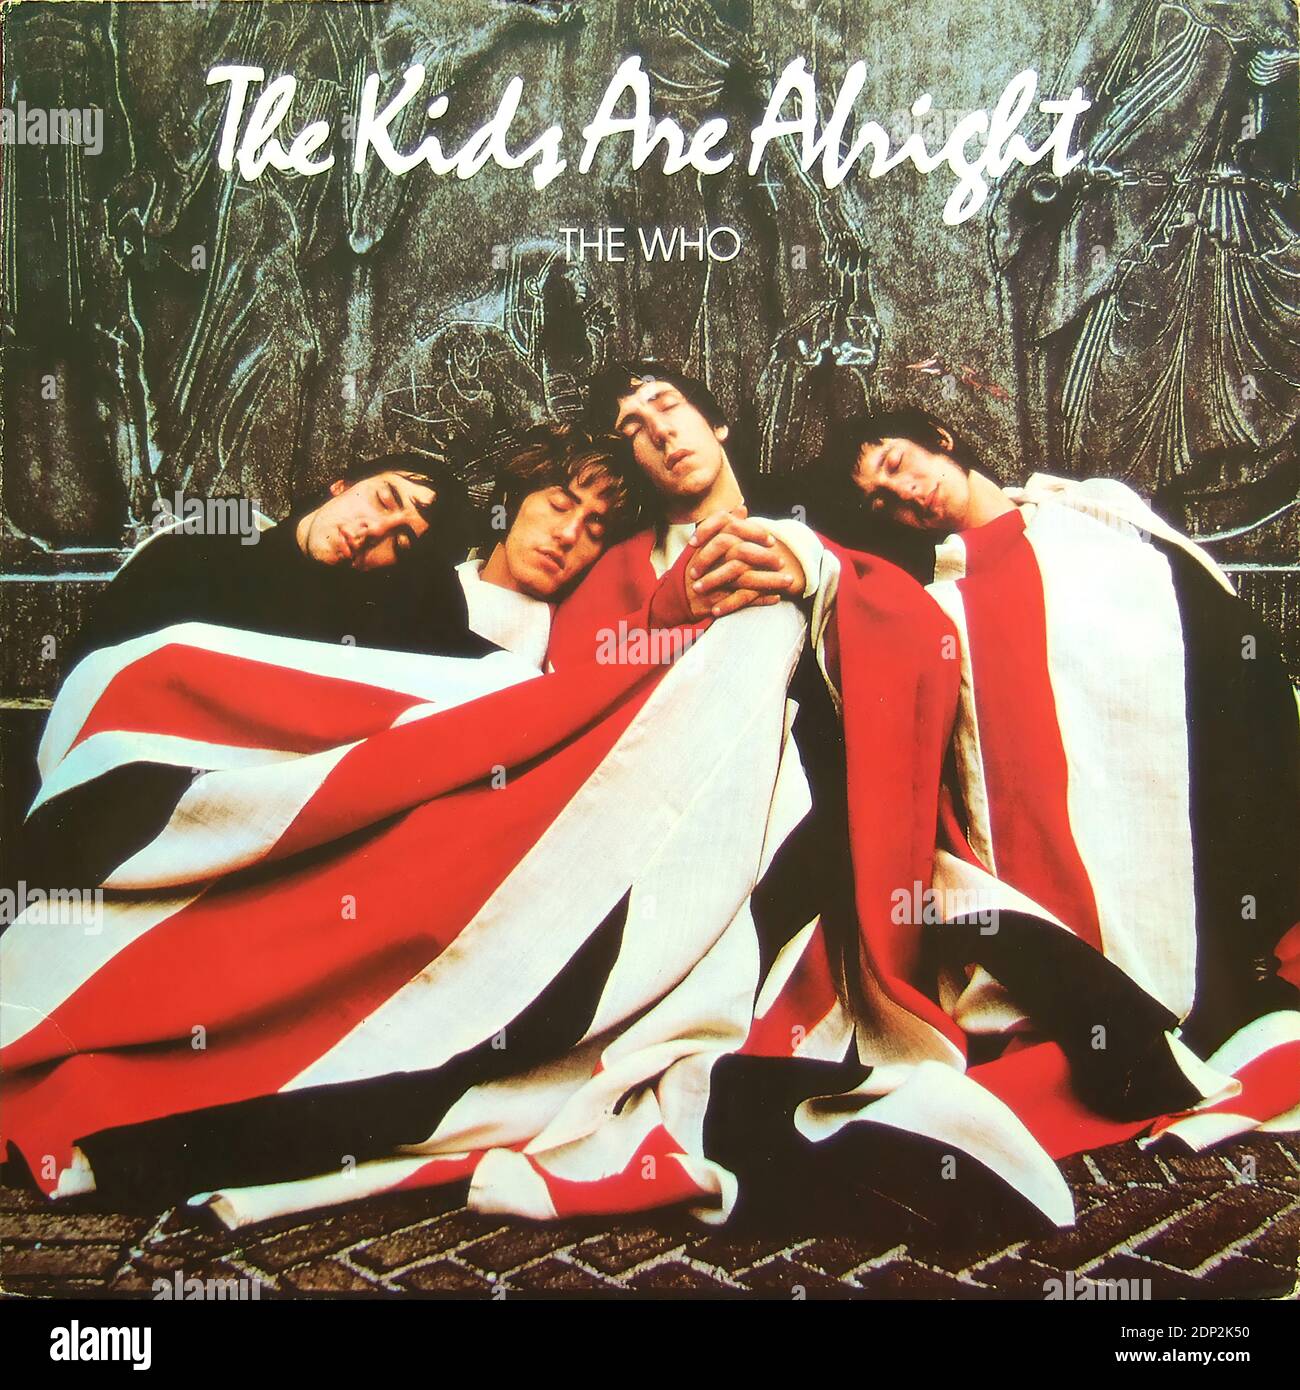 The Who - The Kids are Alright - Vintage vinilo portada del álbum  Fotografía de stock - Alamy